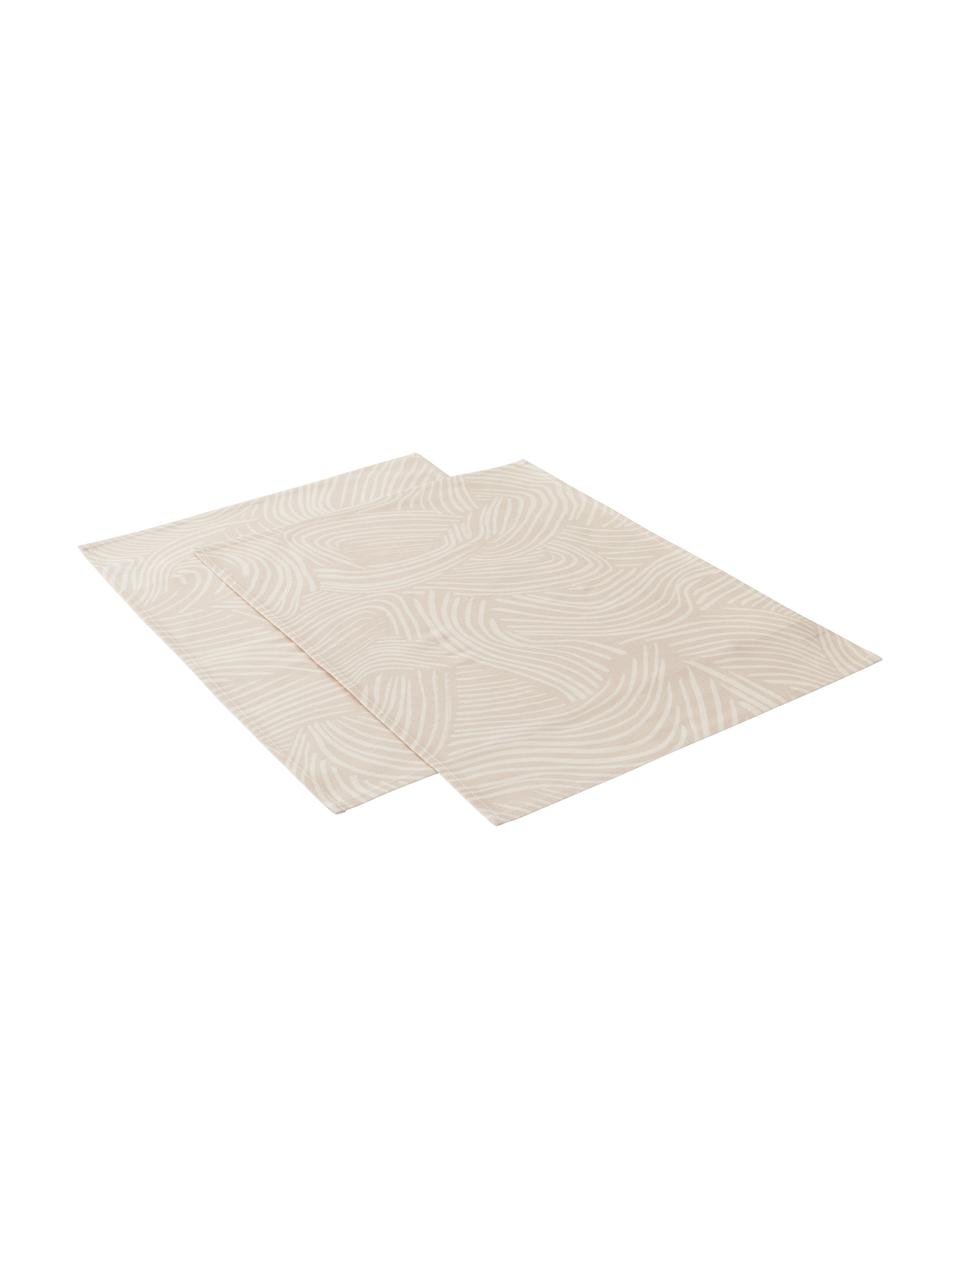 Tovaglietta americana in cotone beige con linee sottili Vida 2 pz, 100% cotone, Beige, Larg. 35 x Lung. 45 cm